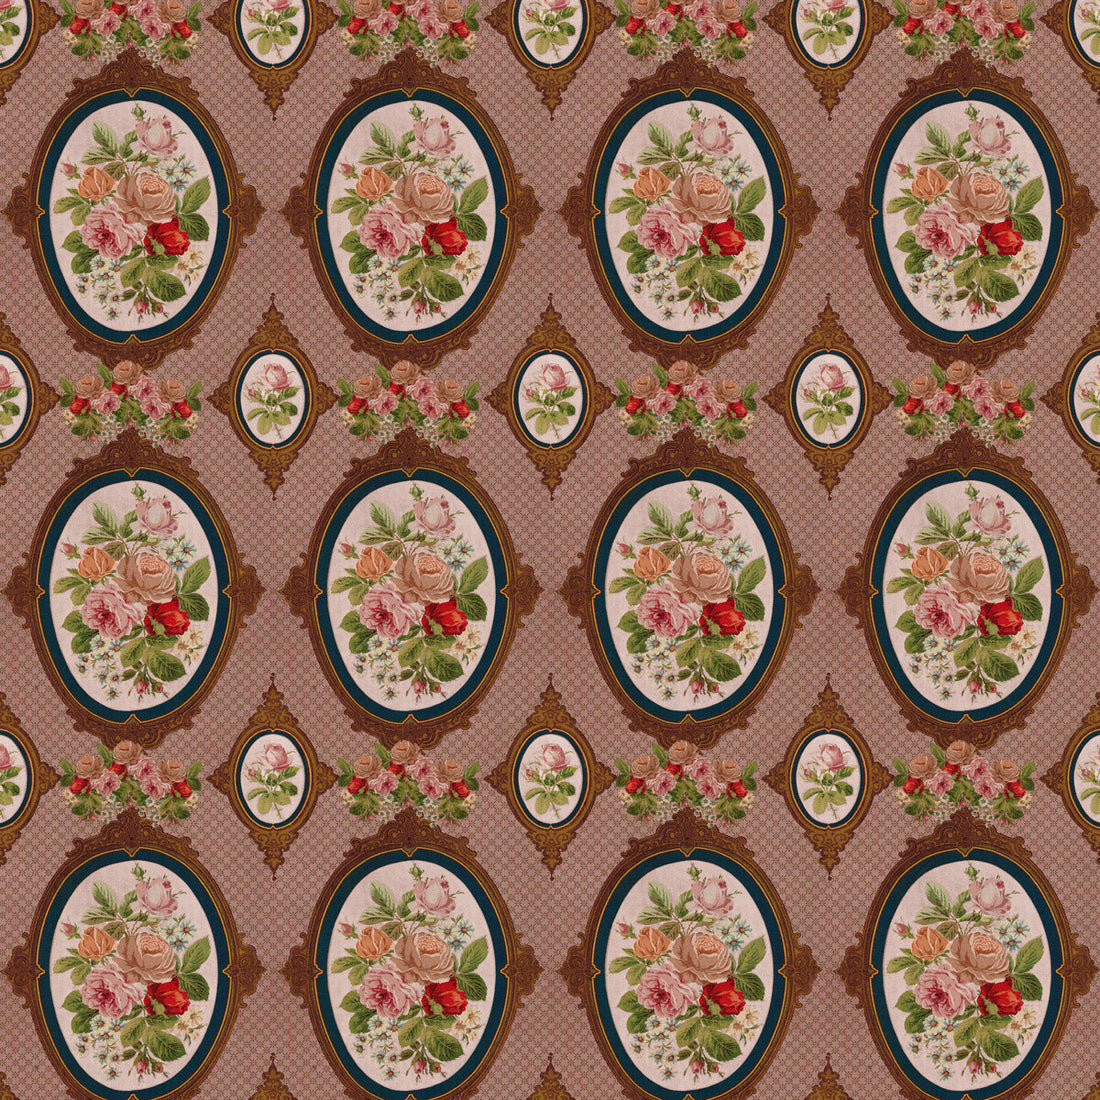 Pepita fabric in multi color - pattern LCT1071.001.0 - by Gaston y Daniela in the Lorenzo Castillo VI collection